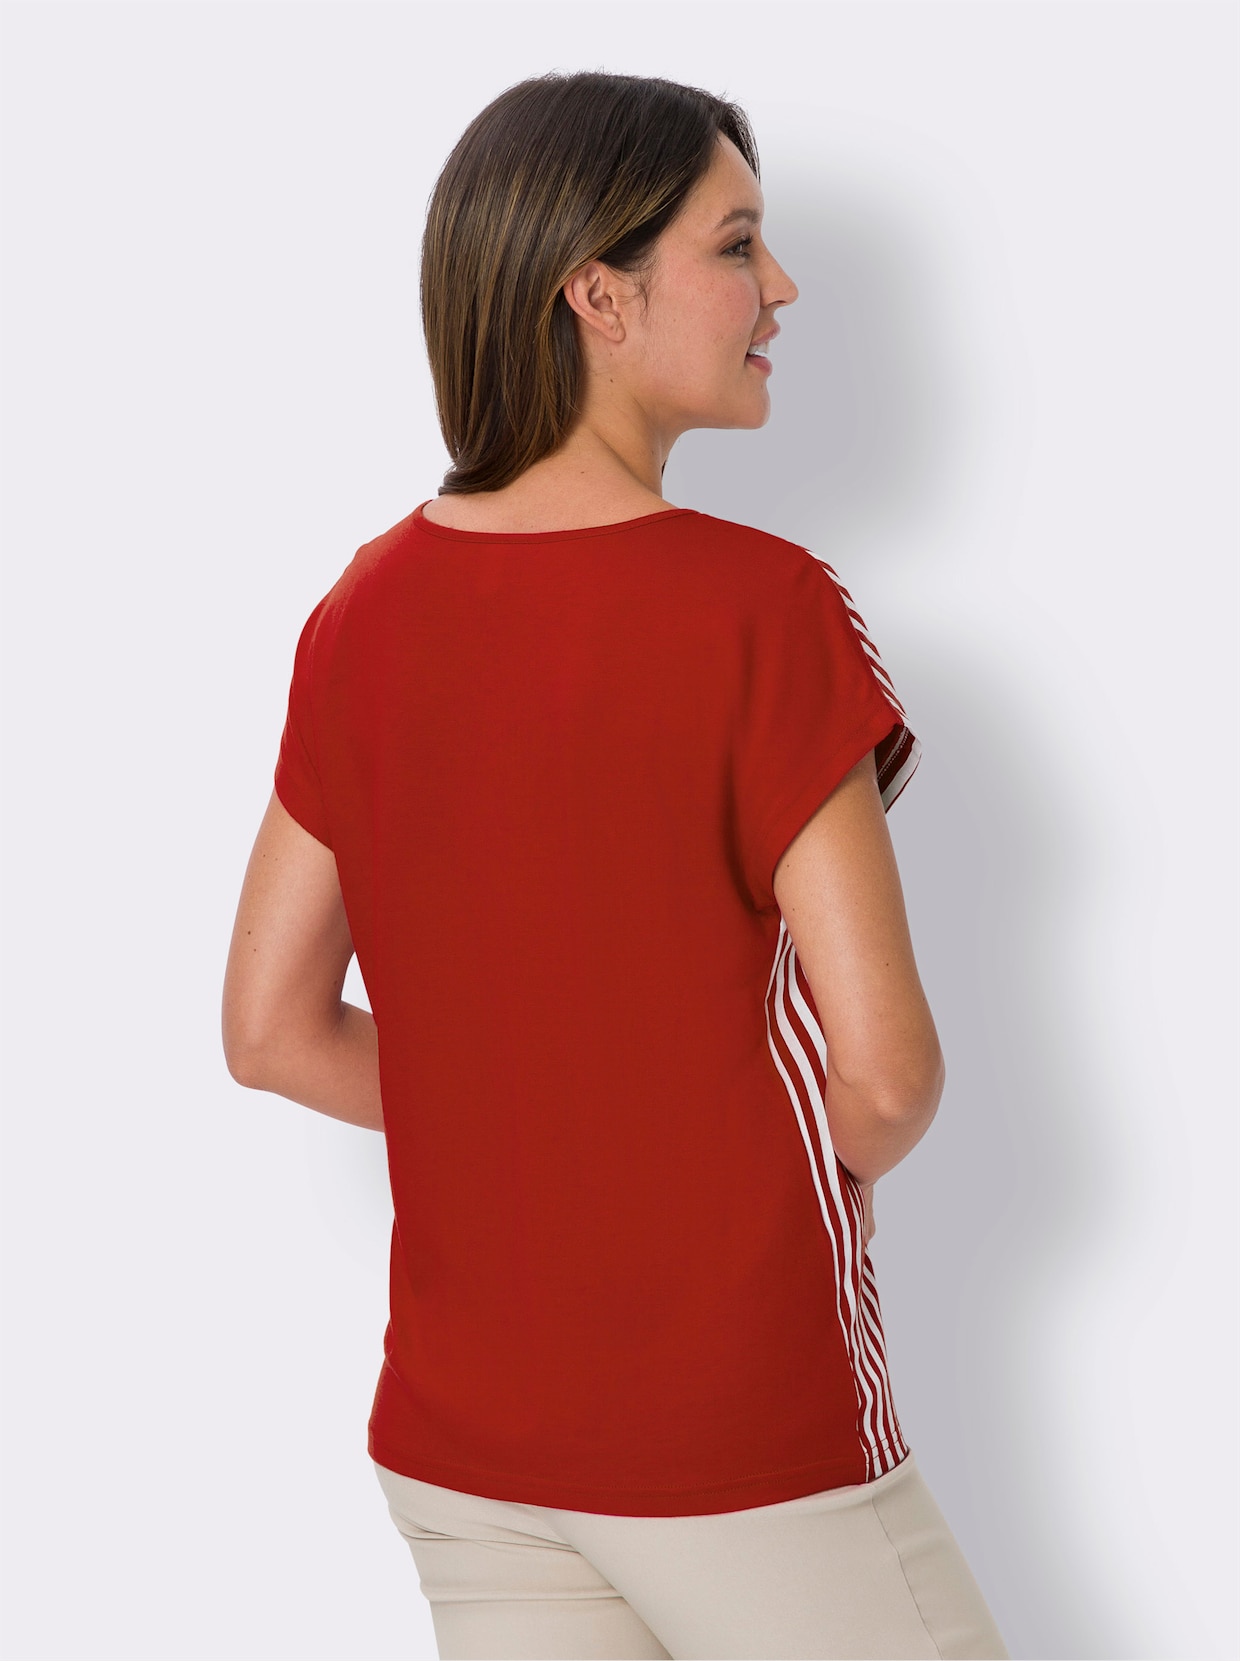 Proužkované tričko - červená-bílá